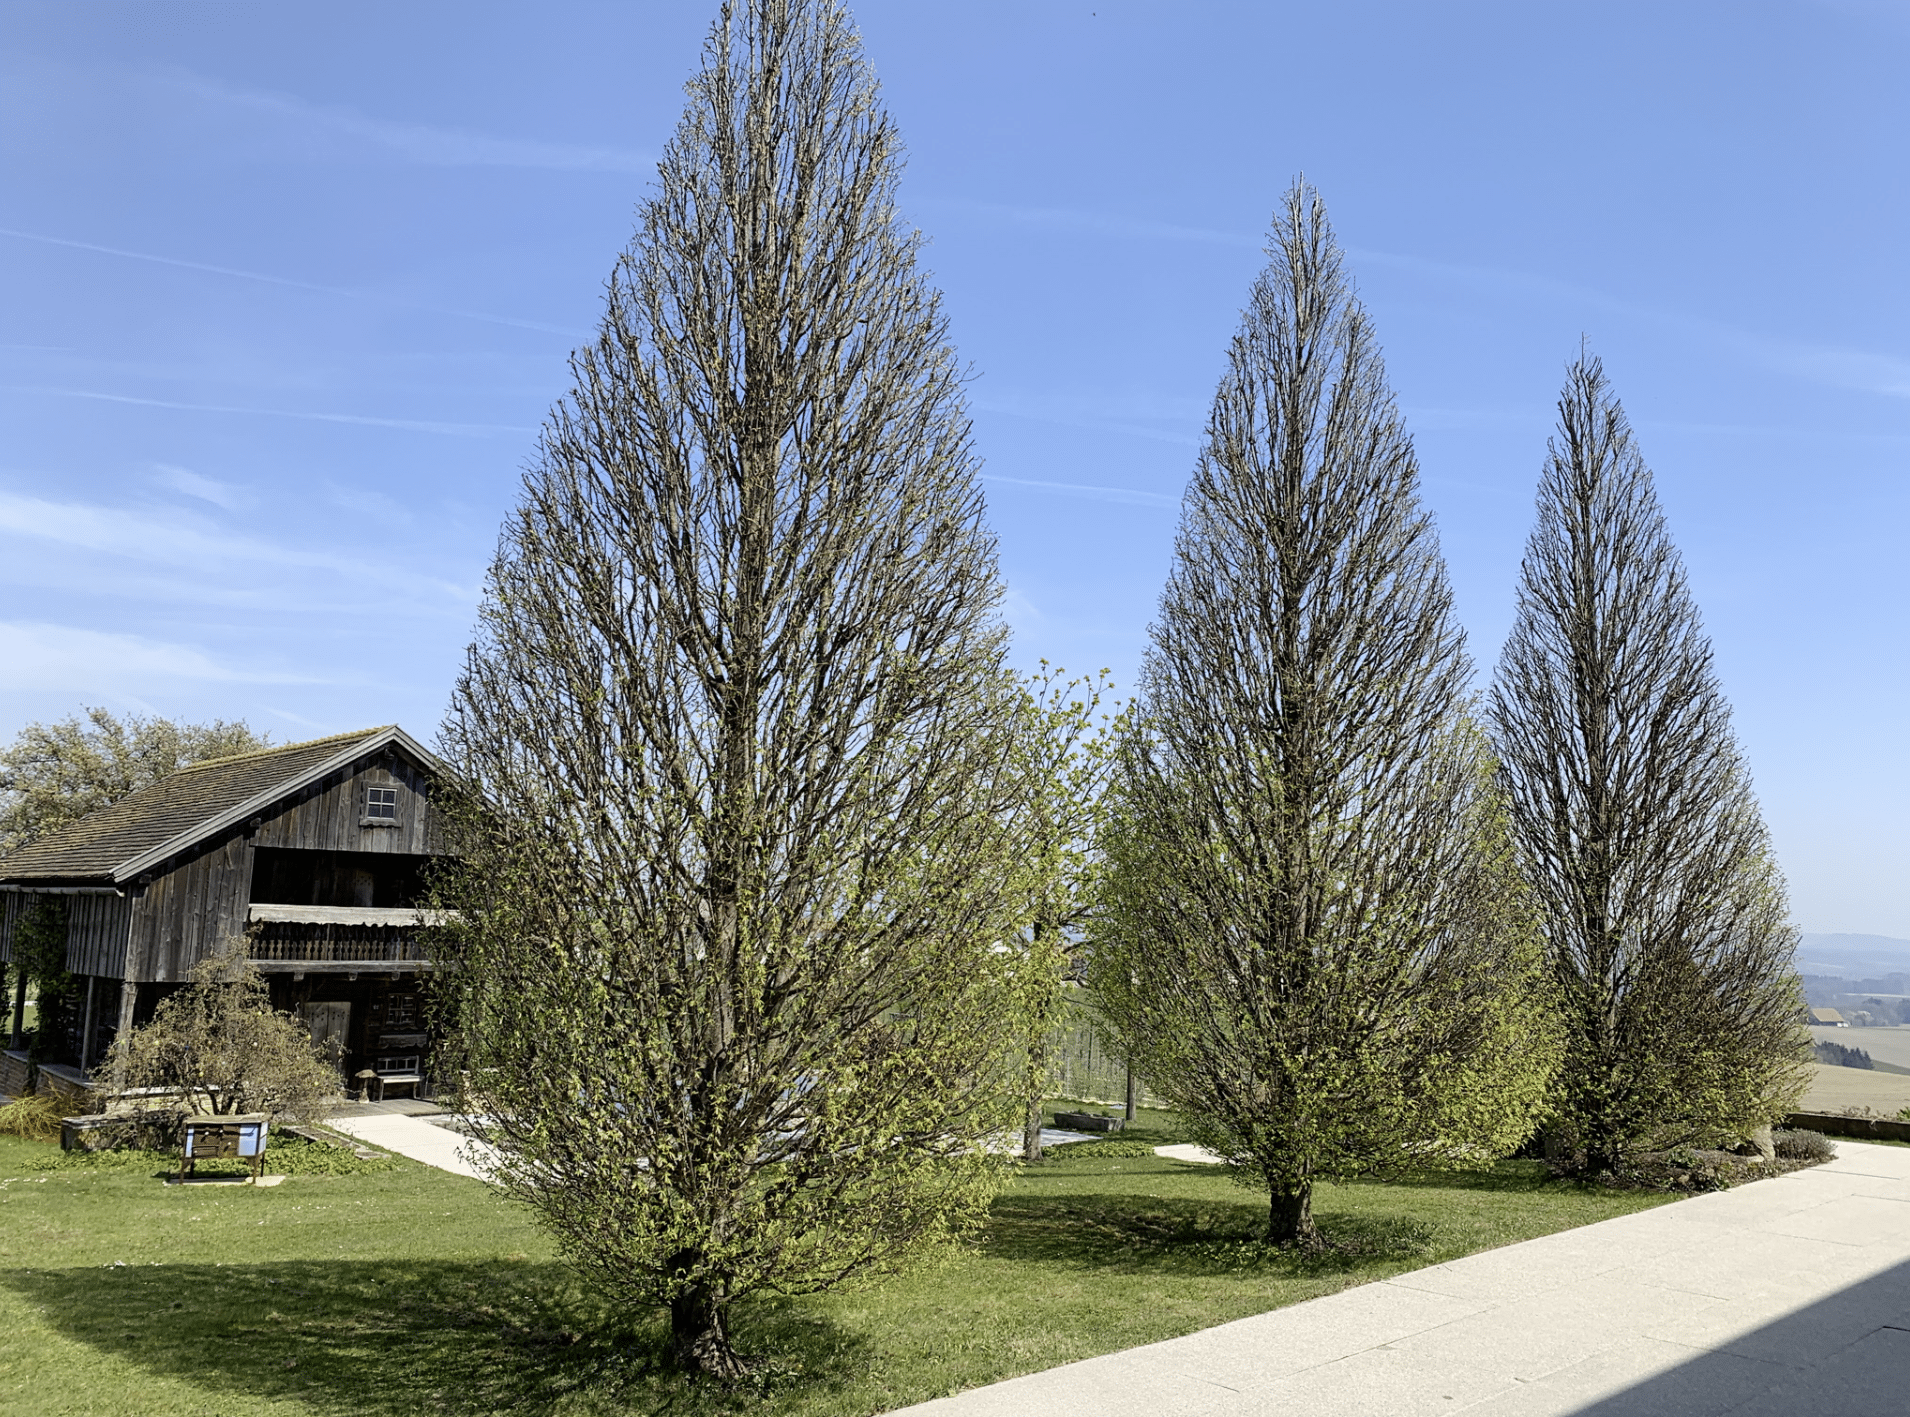 Gartenbau Schmid zeigt die in Form gebrachten Bäume vor einem Holz-Gartenhaus.